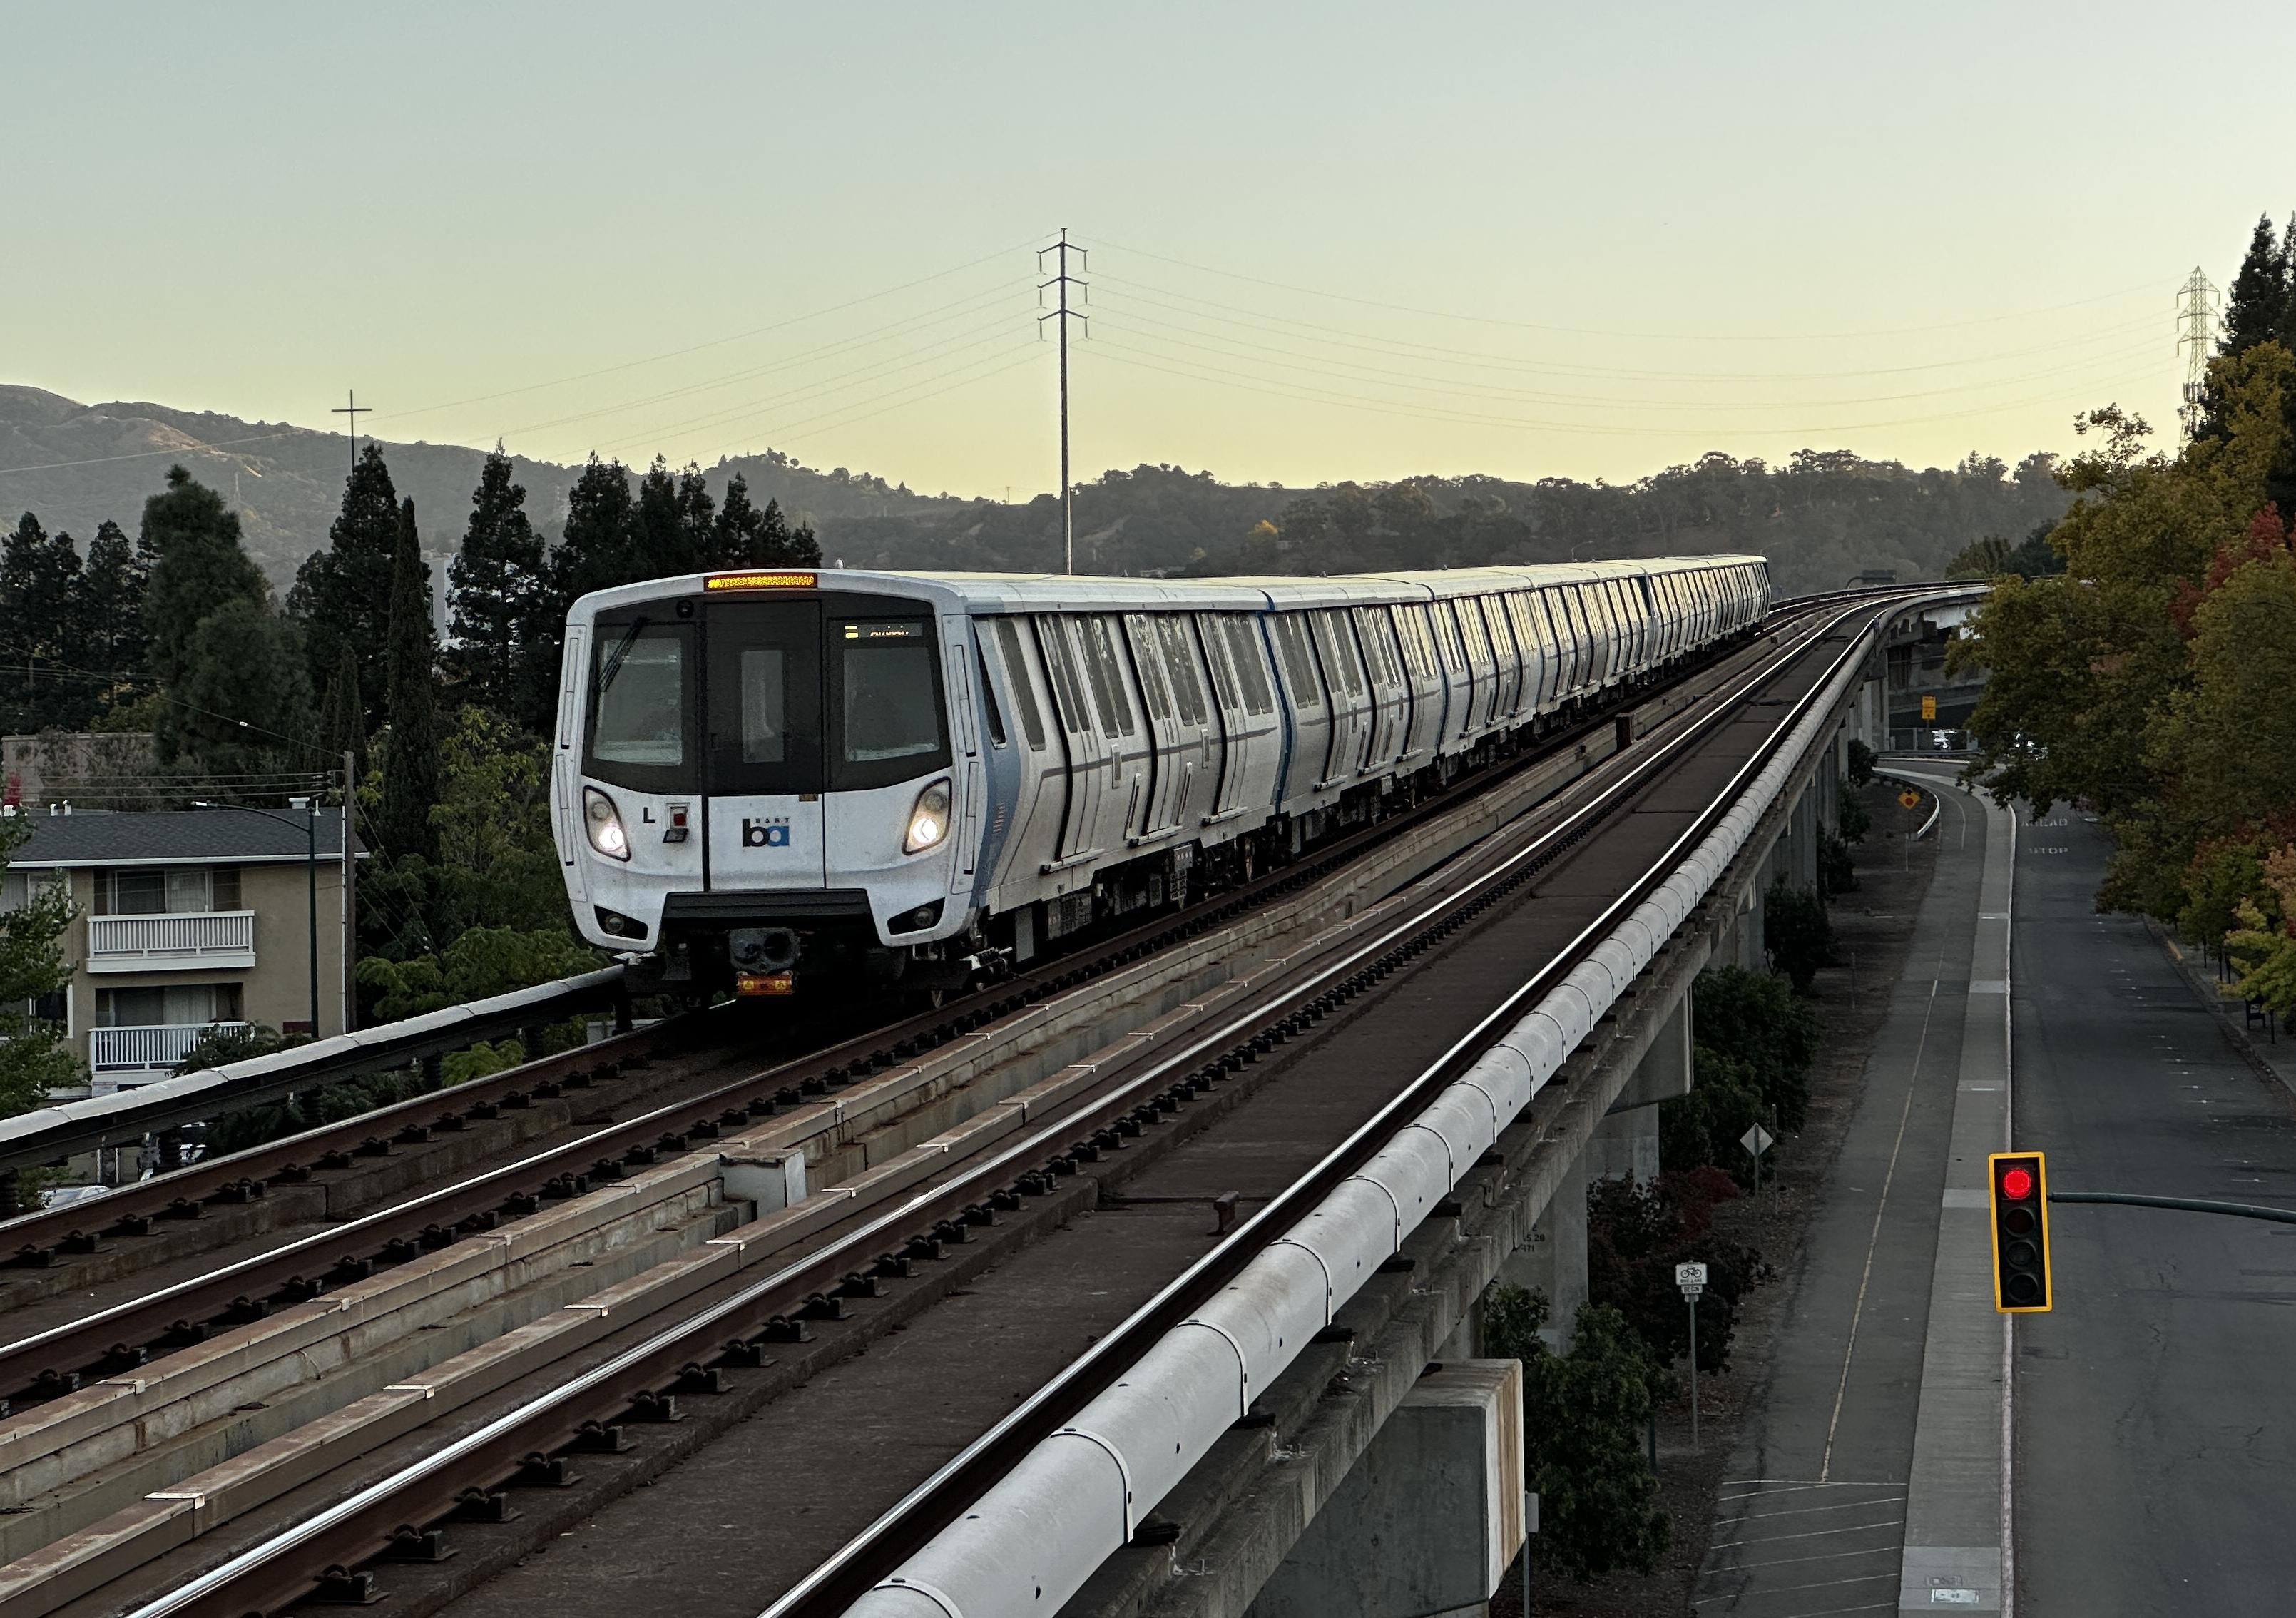 Hãy cùng trải nghiệm Bay Area Rapid Transit, một hệ thống vận chuyển công cộng hiện đại và tiện lợi. Bạn sẽ được khám phá những thành phố lớn của Mỹ một cách dễ dàng và nhanh chóng. Nhấn play để xem thêm chi tiết về hệ thống này.